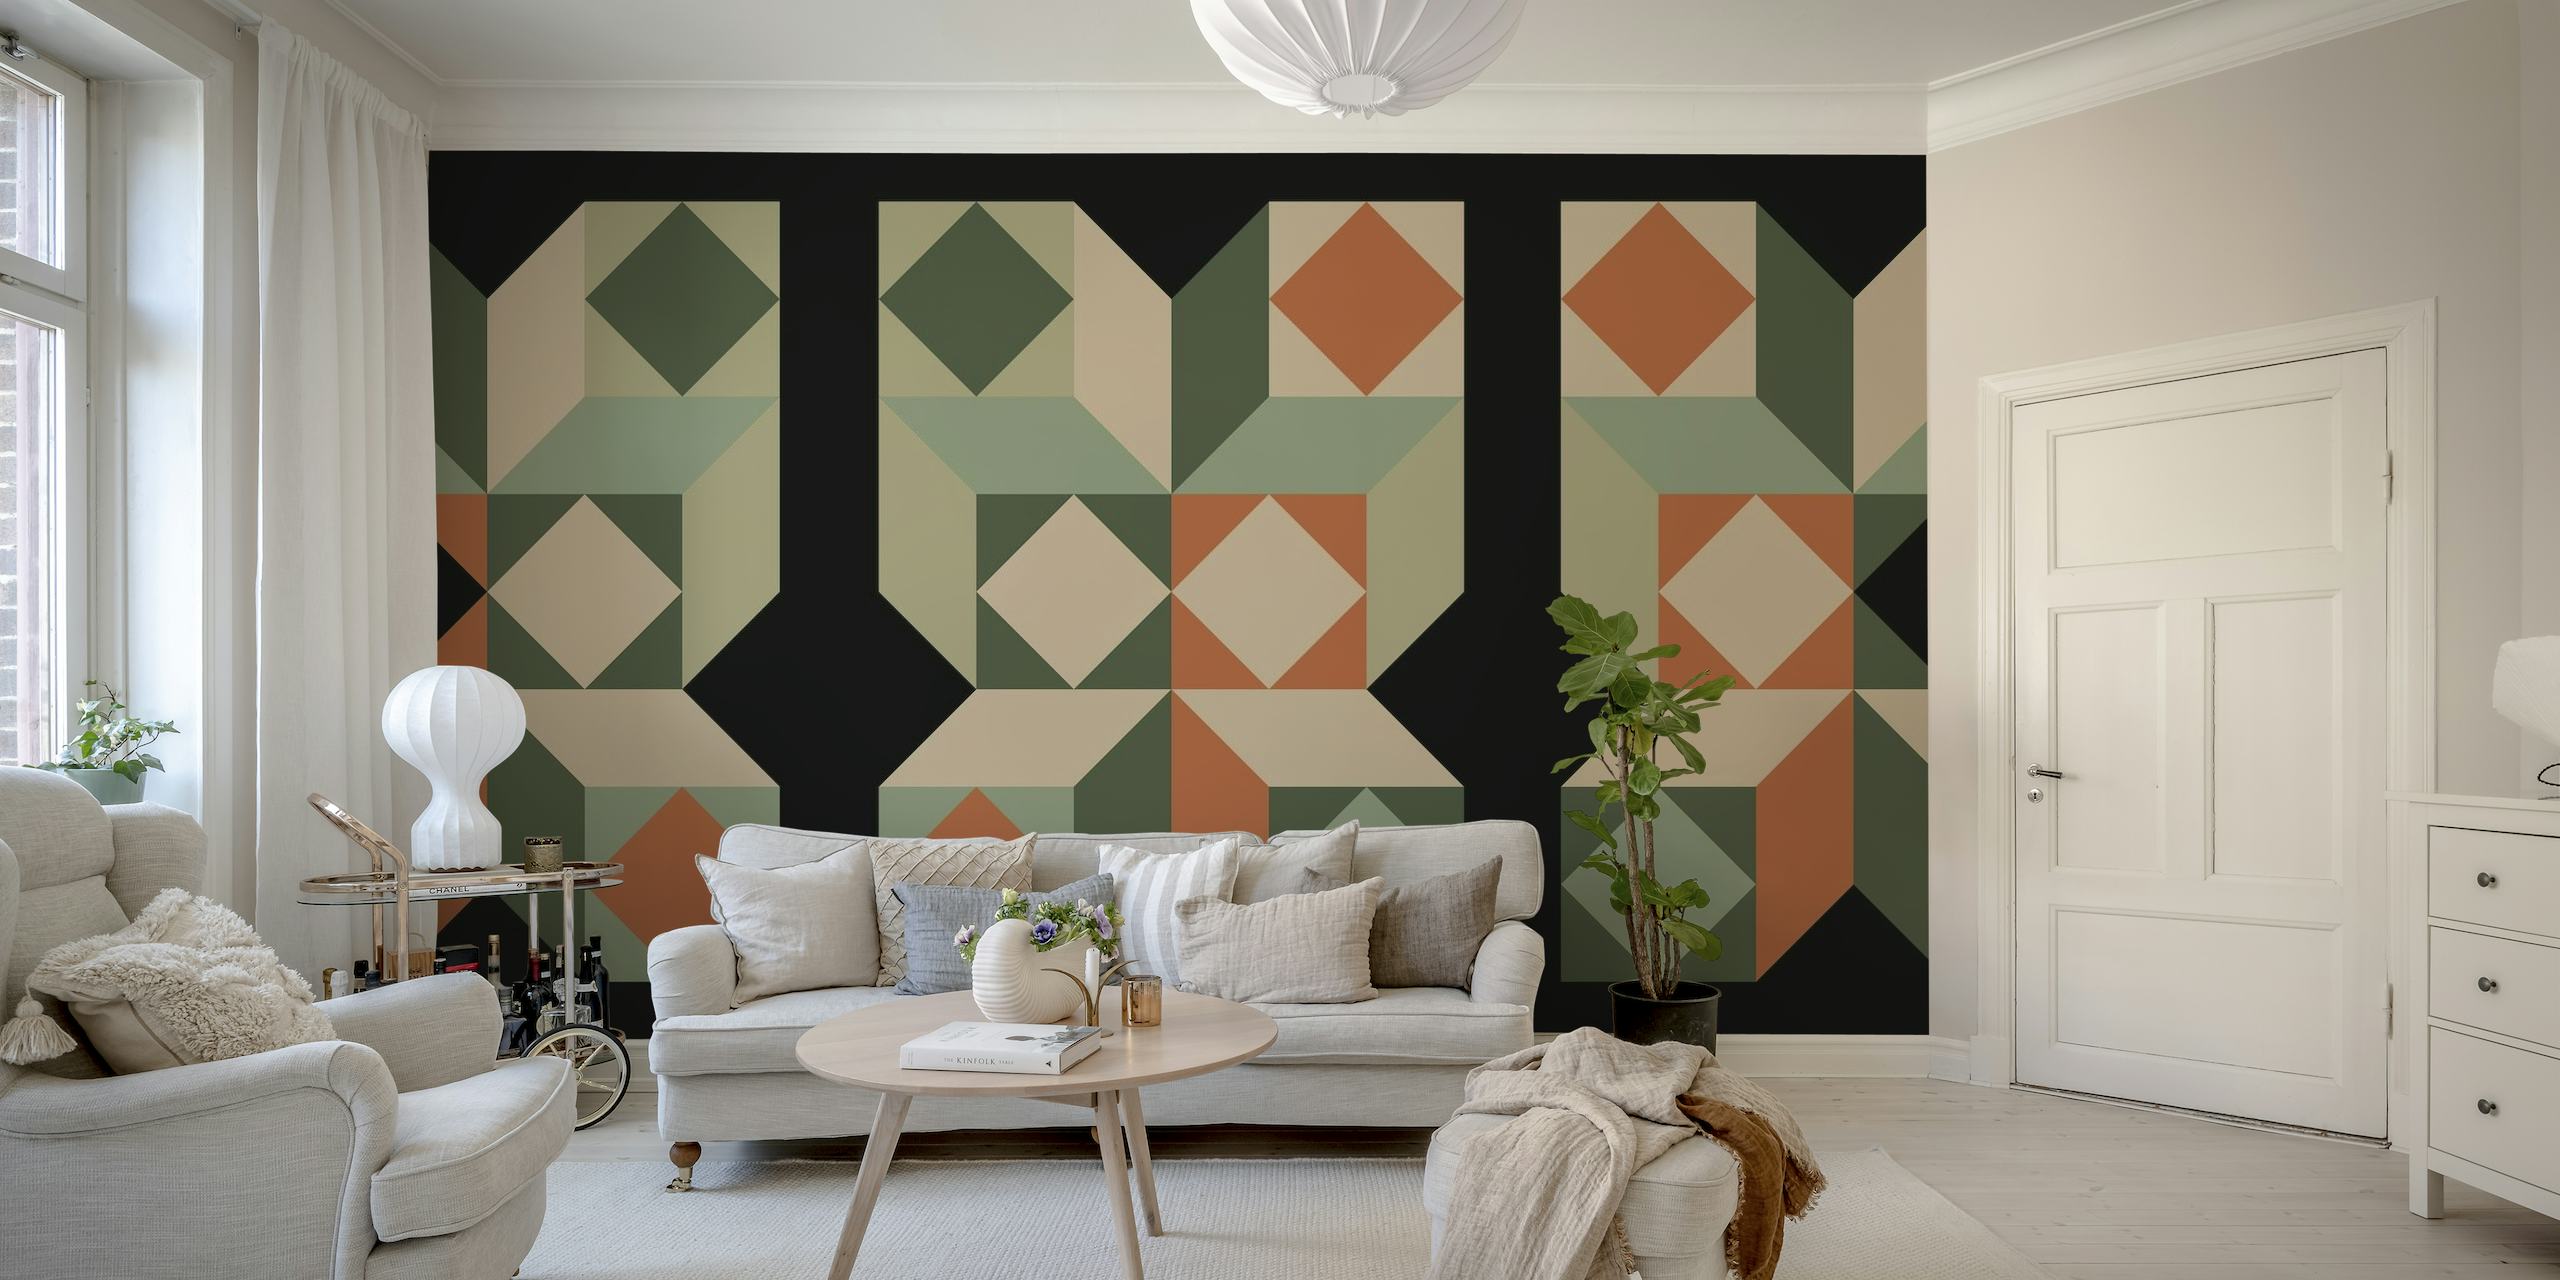 Mural de parede inspirado na Bauhaus de meados do século com padrões geométricos em tons verdes, laranja e neutros.